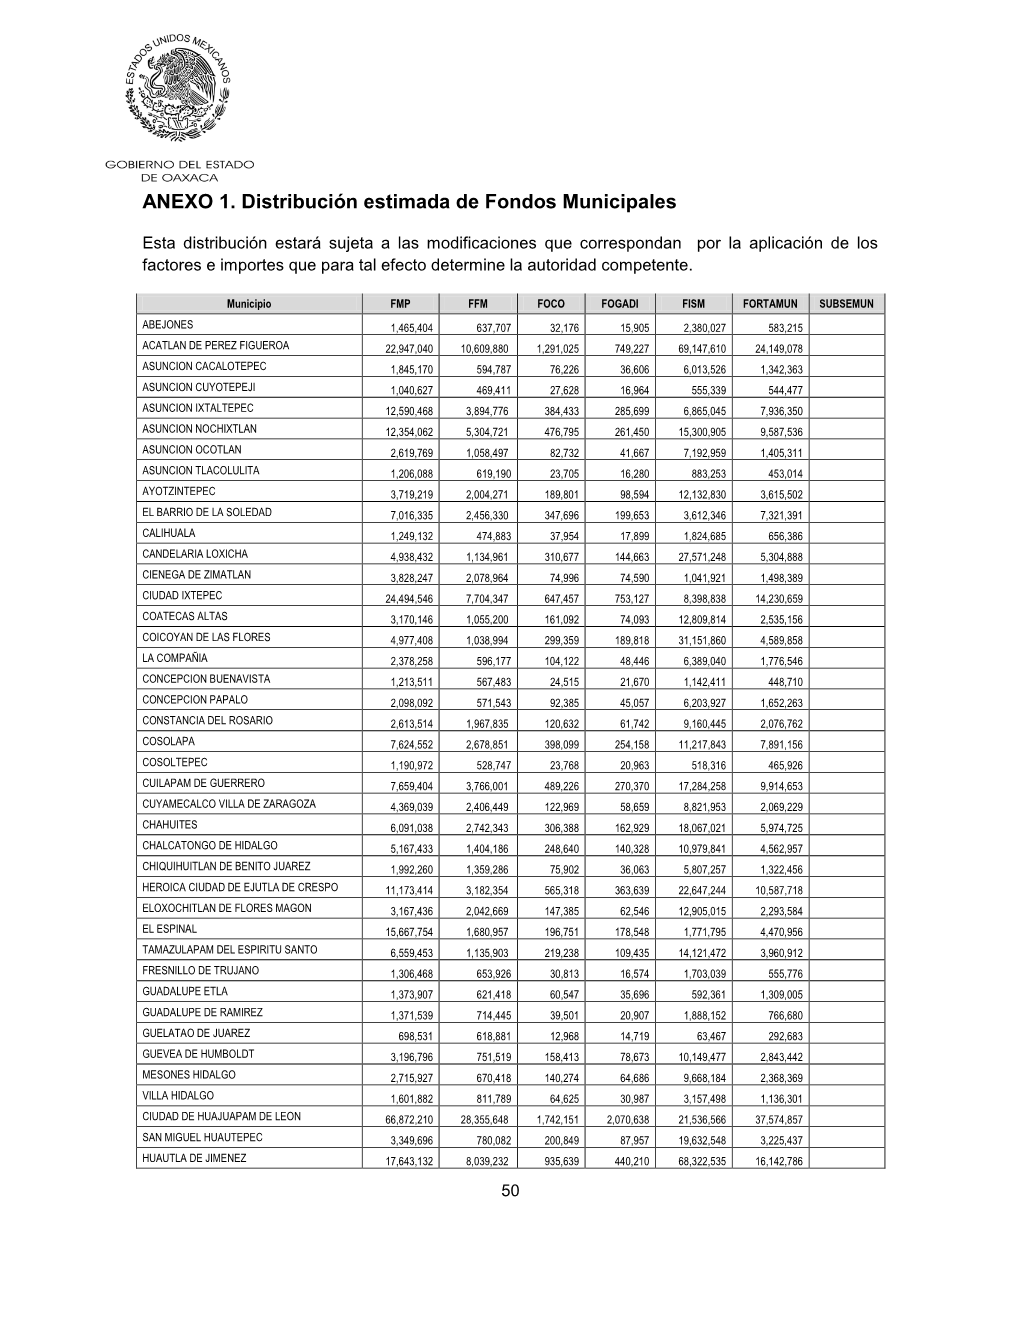 ANEXO 1. Distribución Estimada De Fondos Municipales